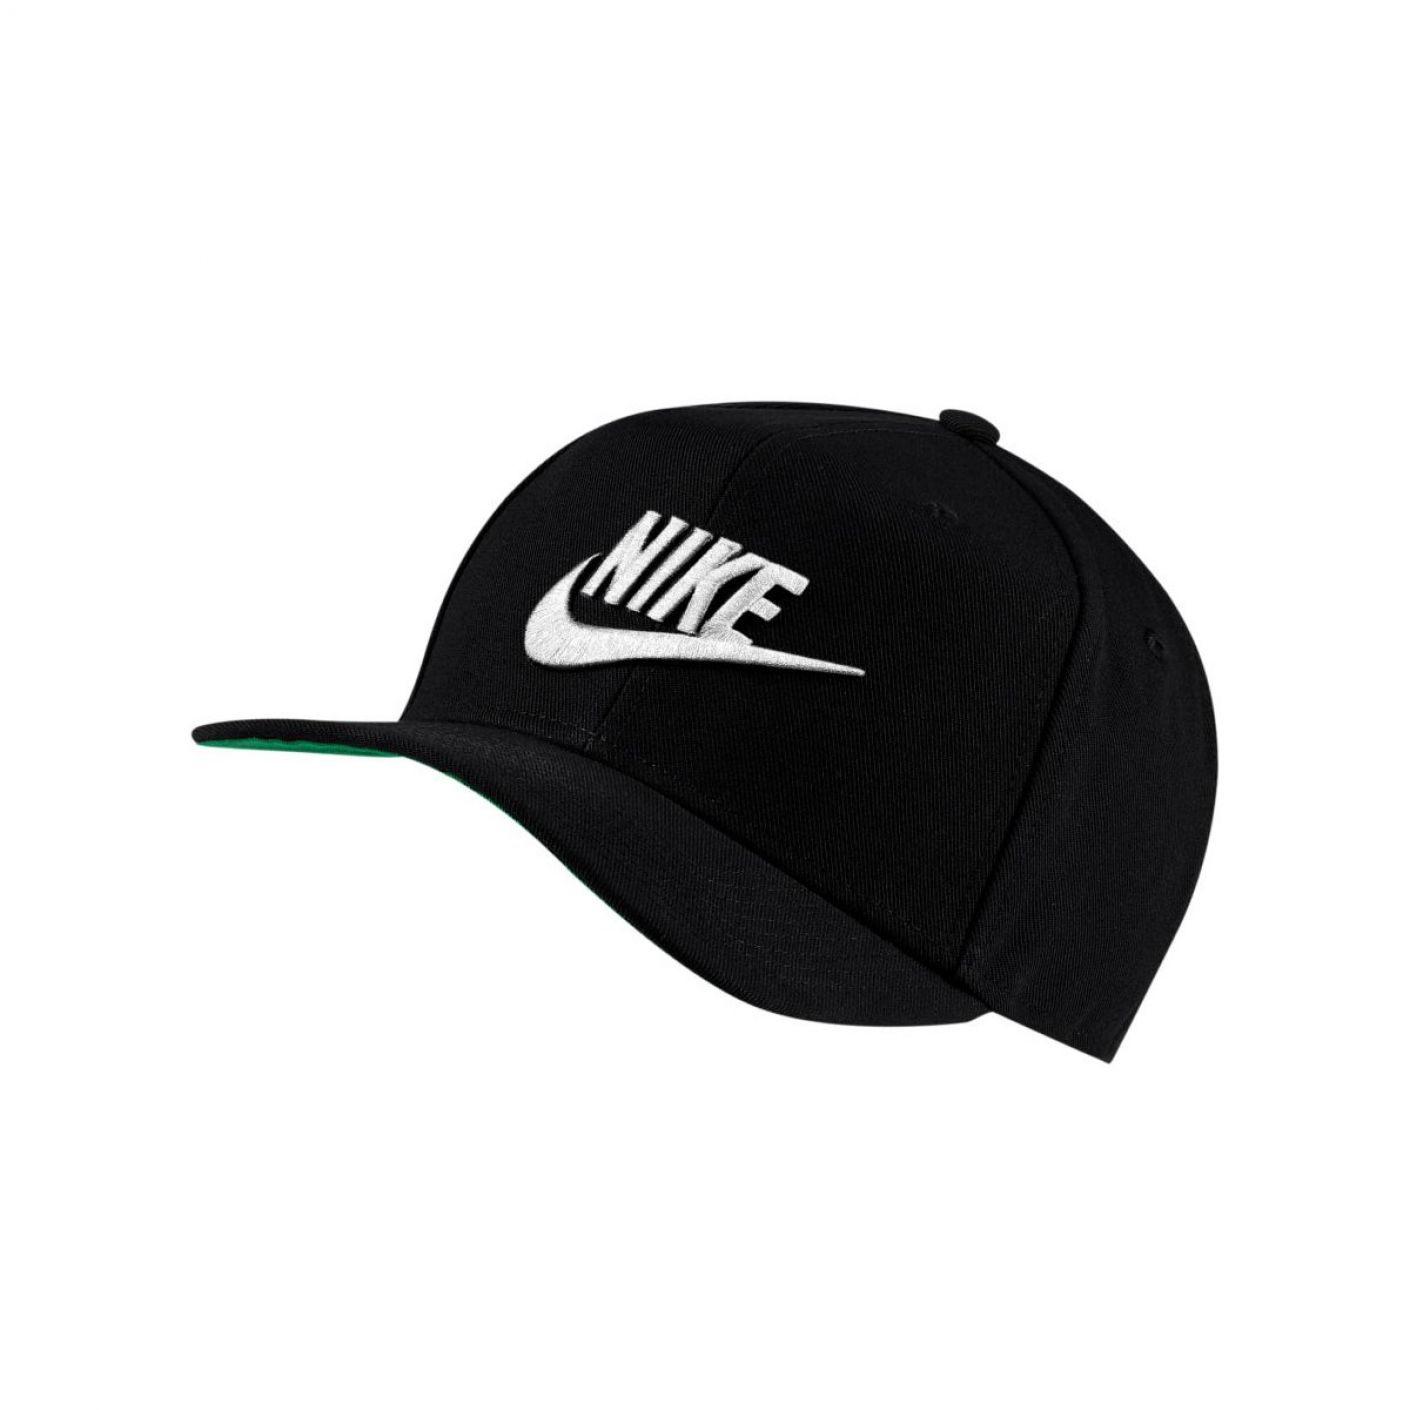 Nike Pro Black Cap